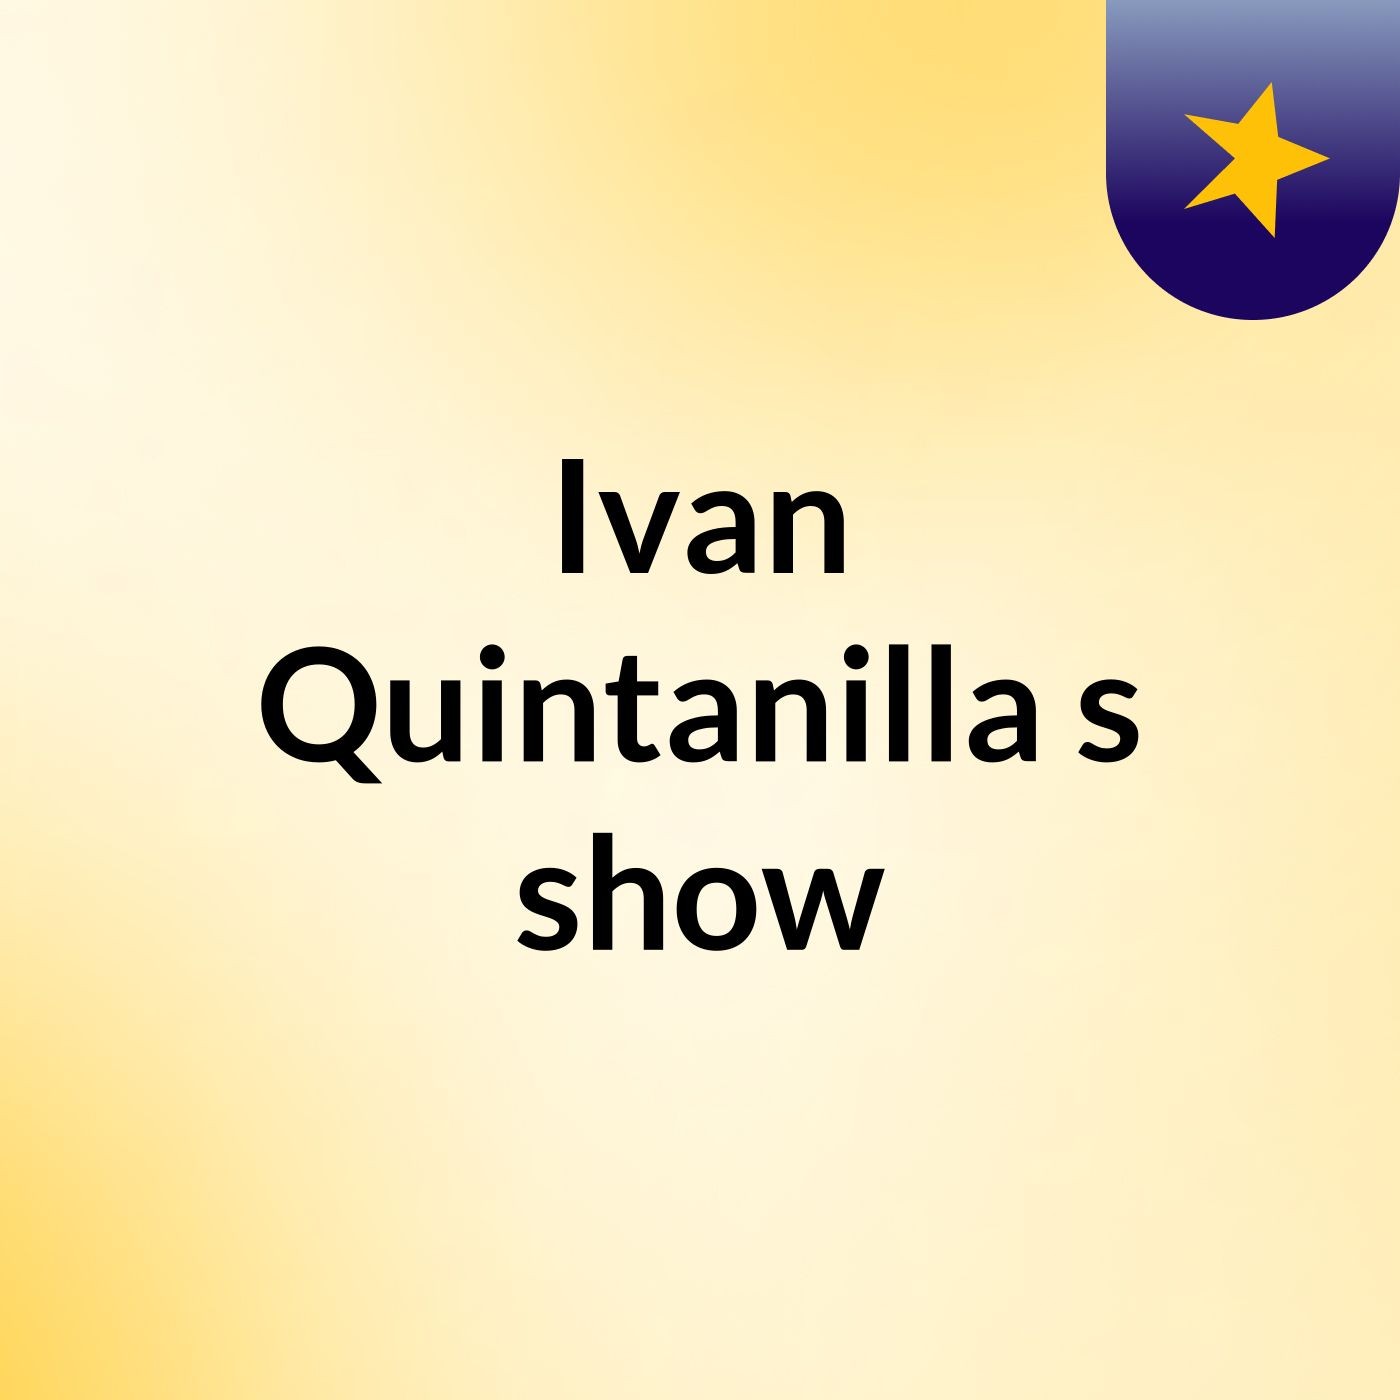 Ivan Quintanilla's show